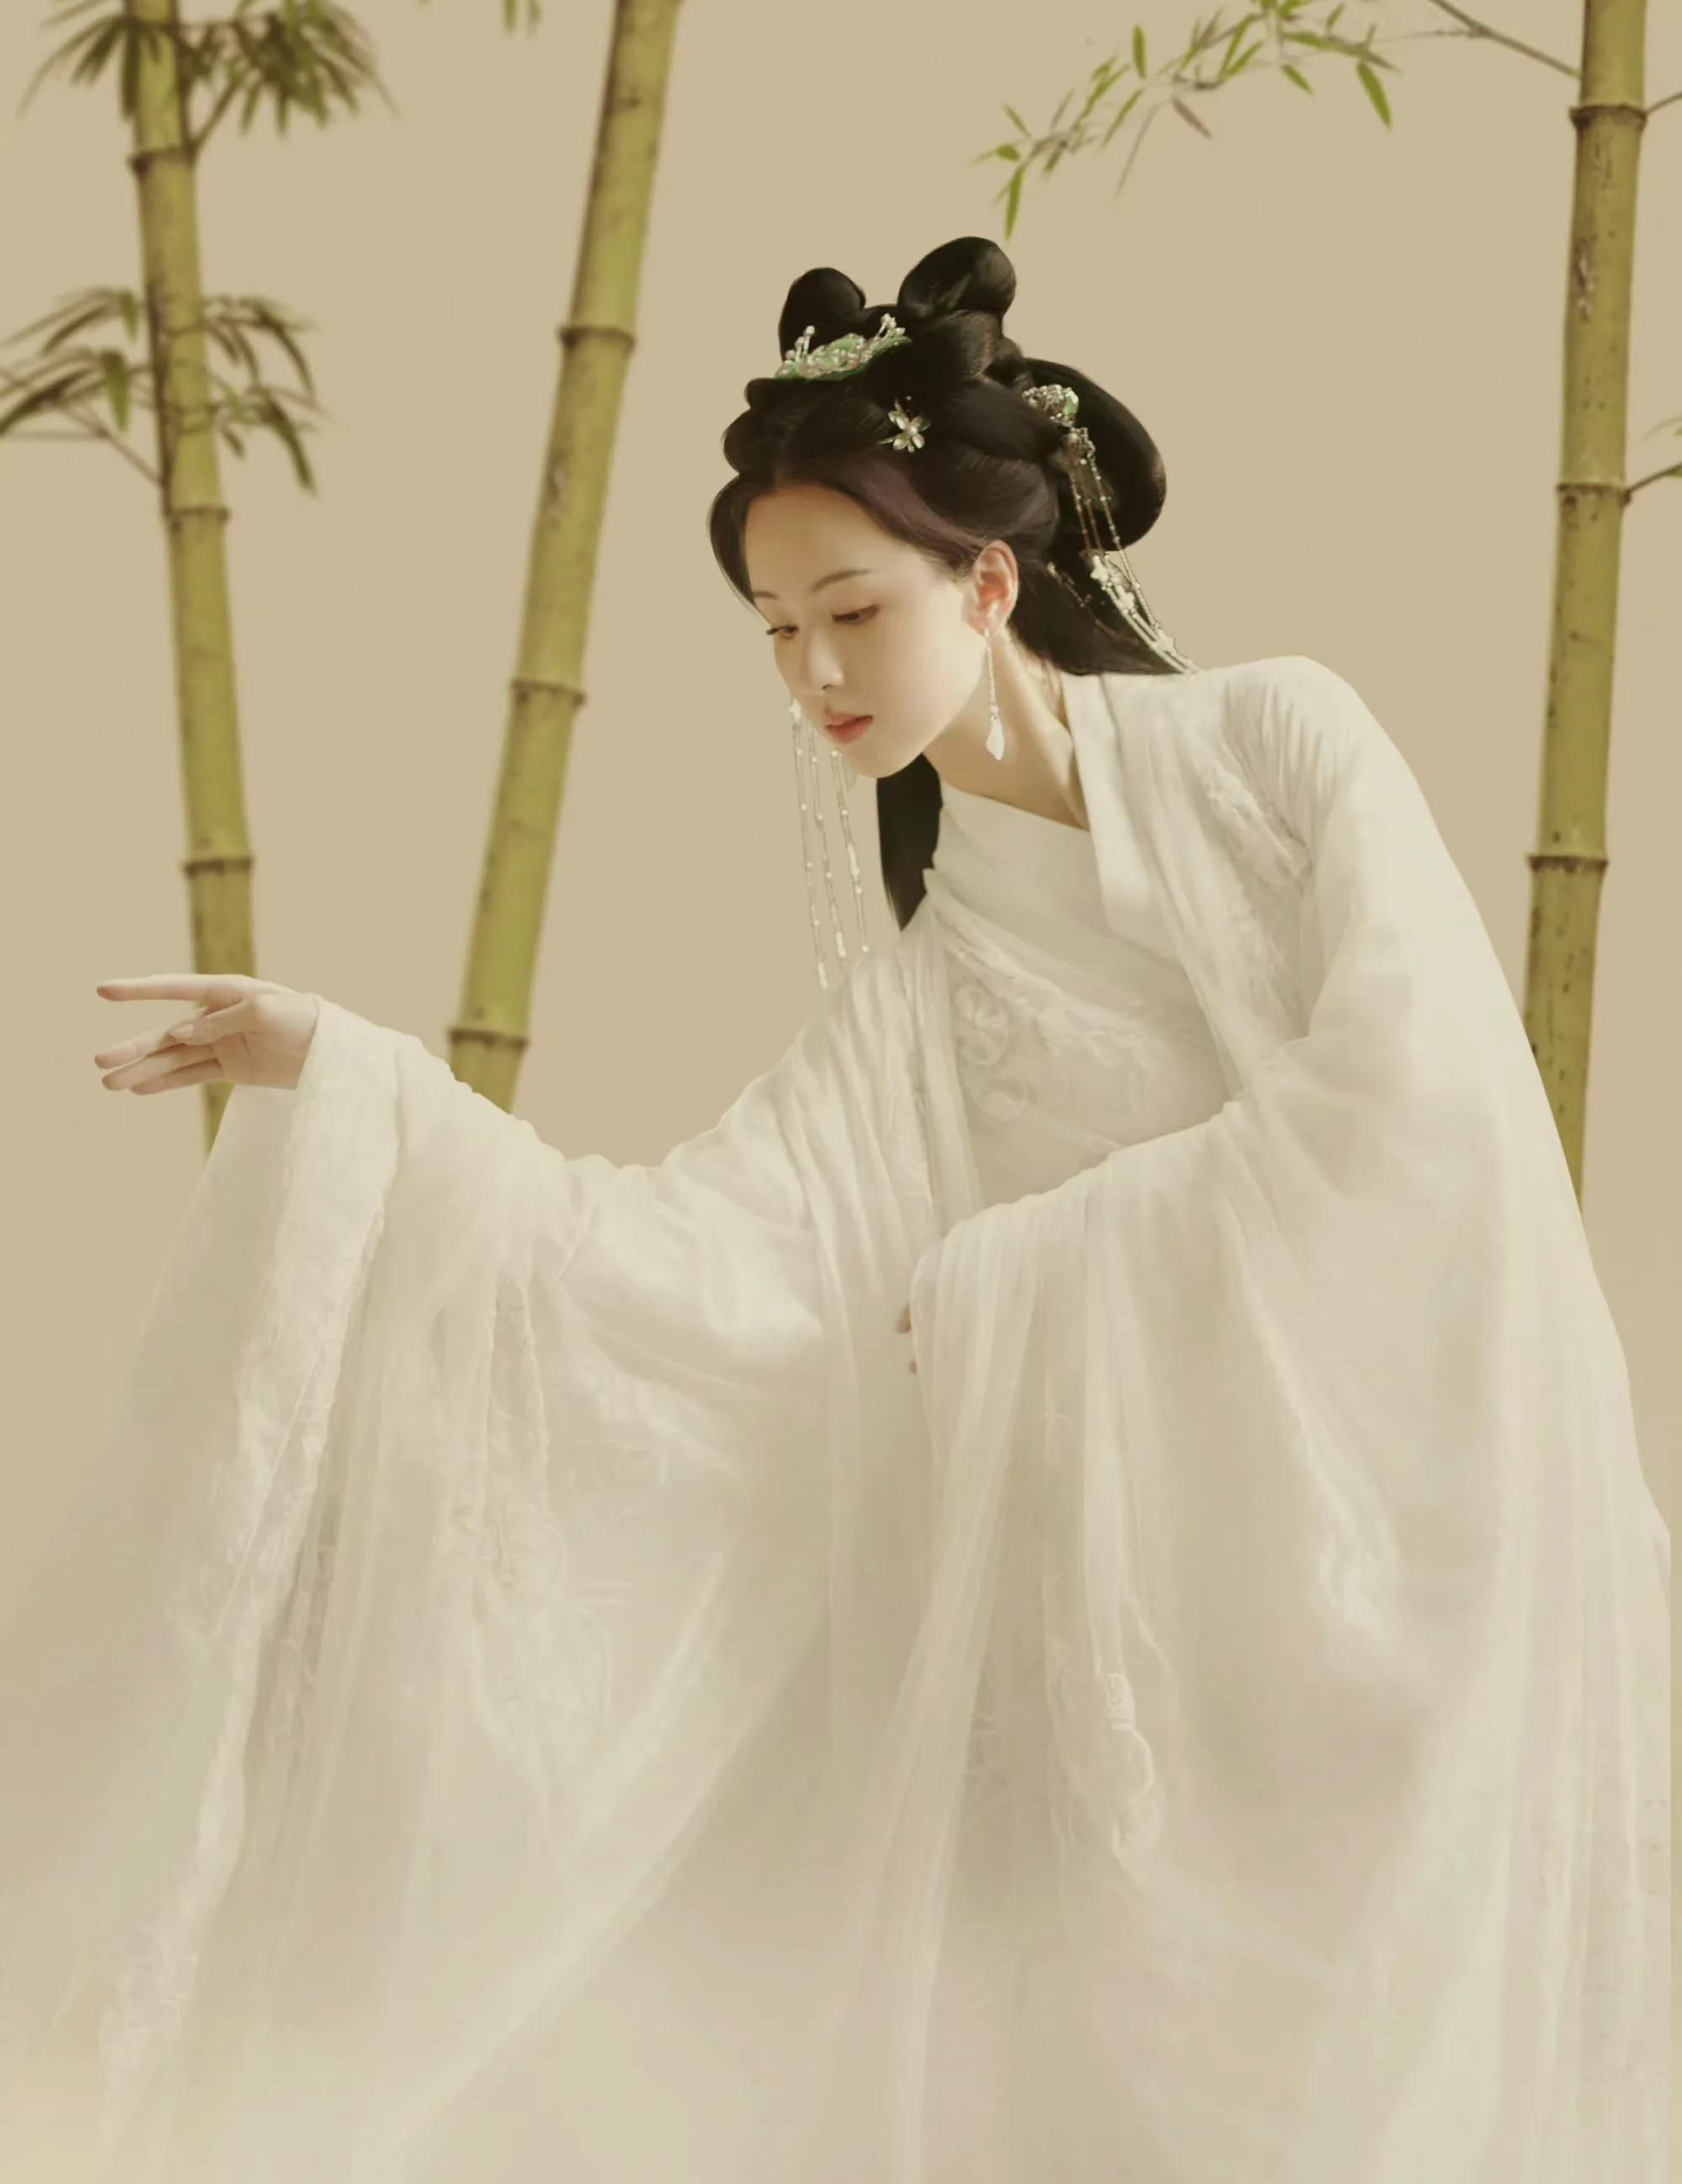 陈都灵白衣古装造型美如画 眼含泪水让人看了心疼-搜狐大视野-搜狐新闻